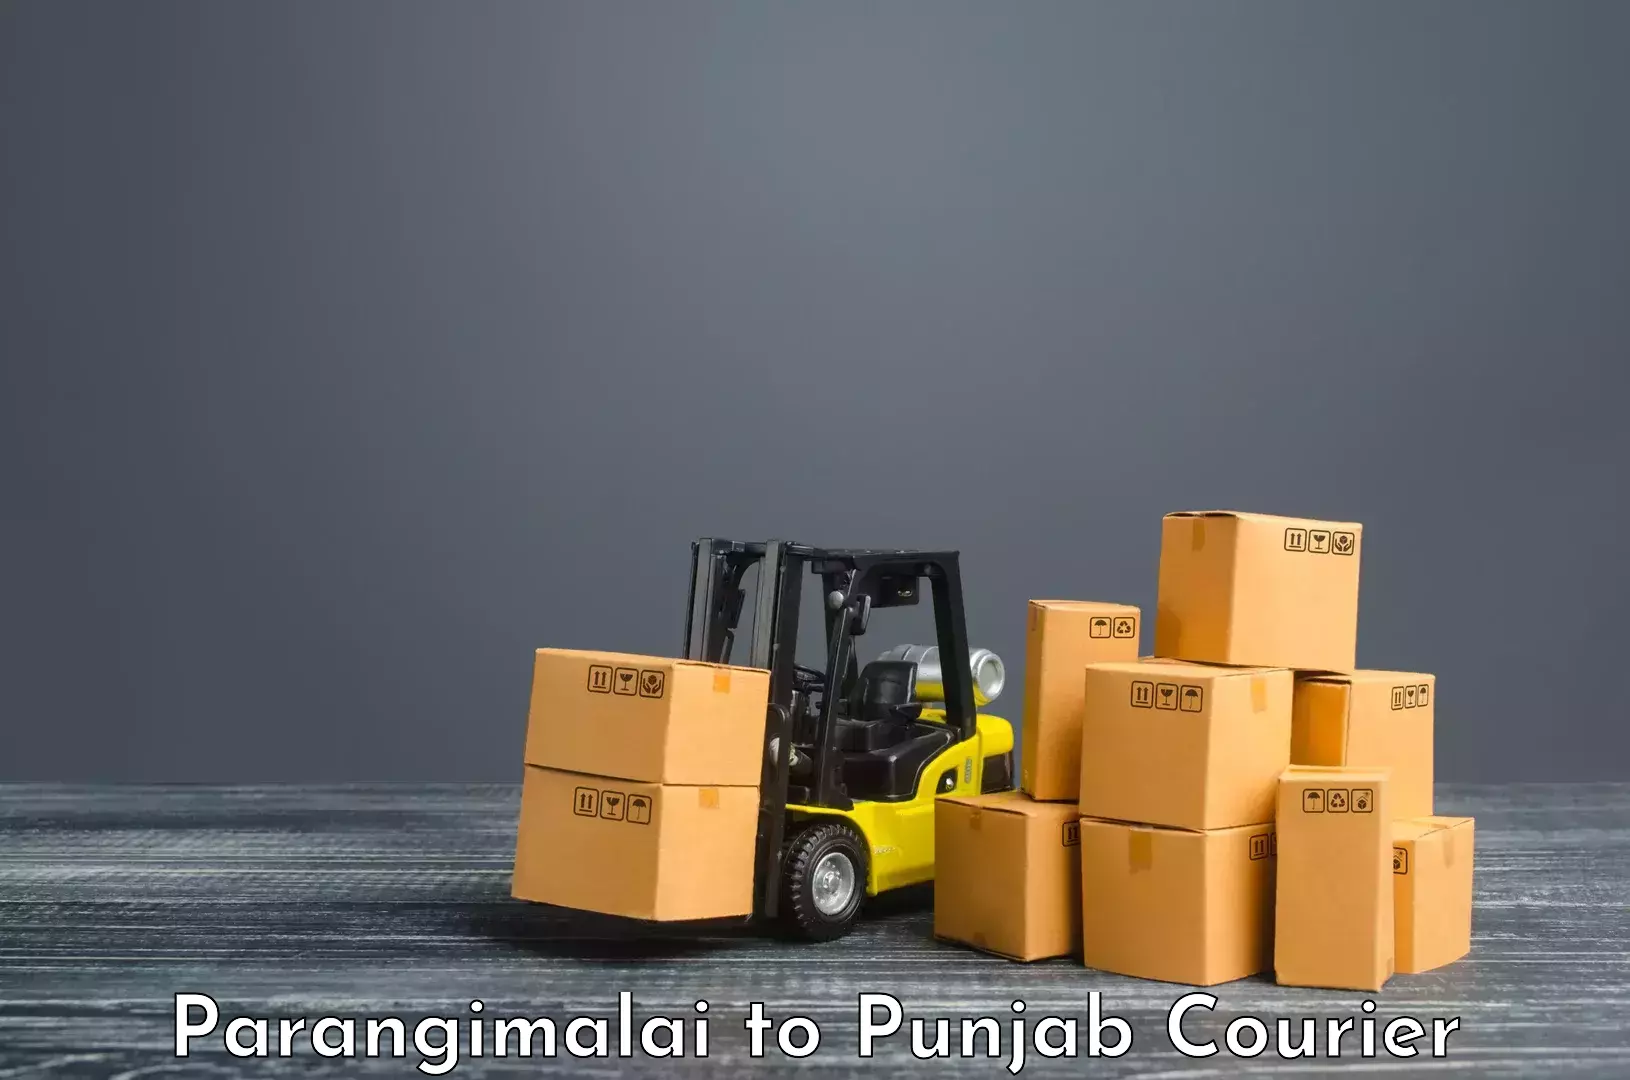 Nationwide courier service Parangimalai to Dinanagar